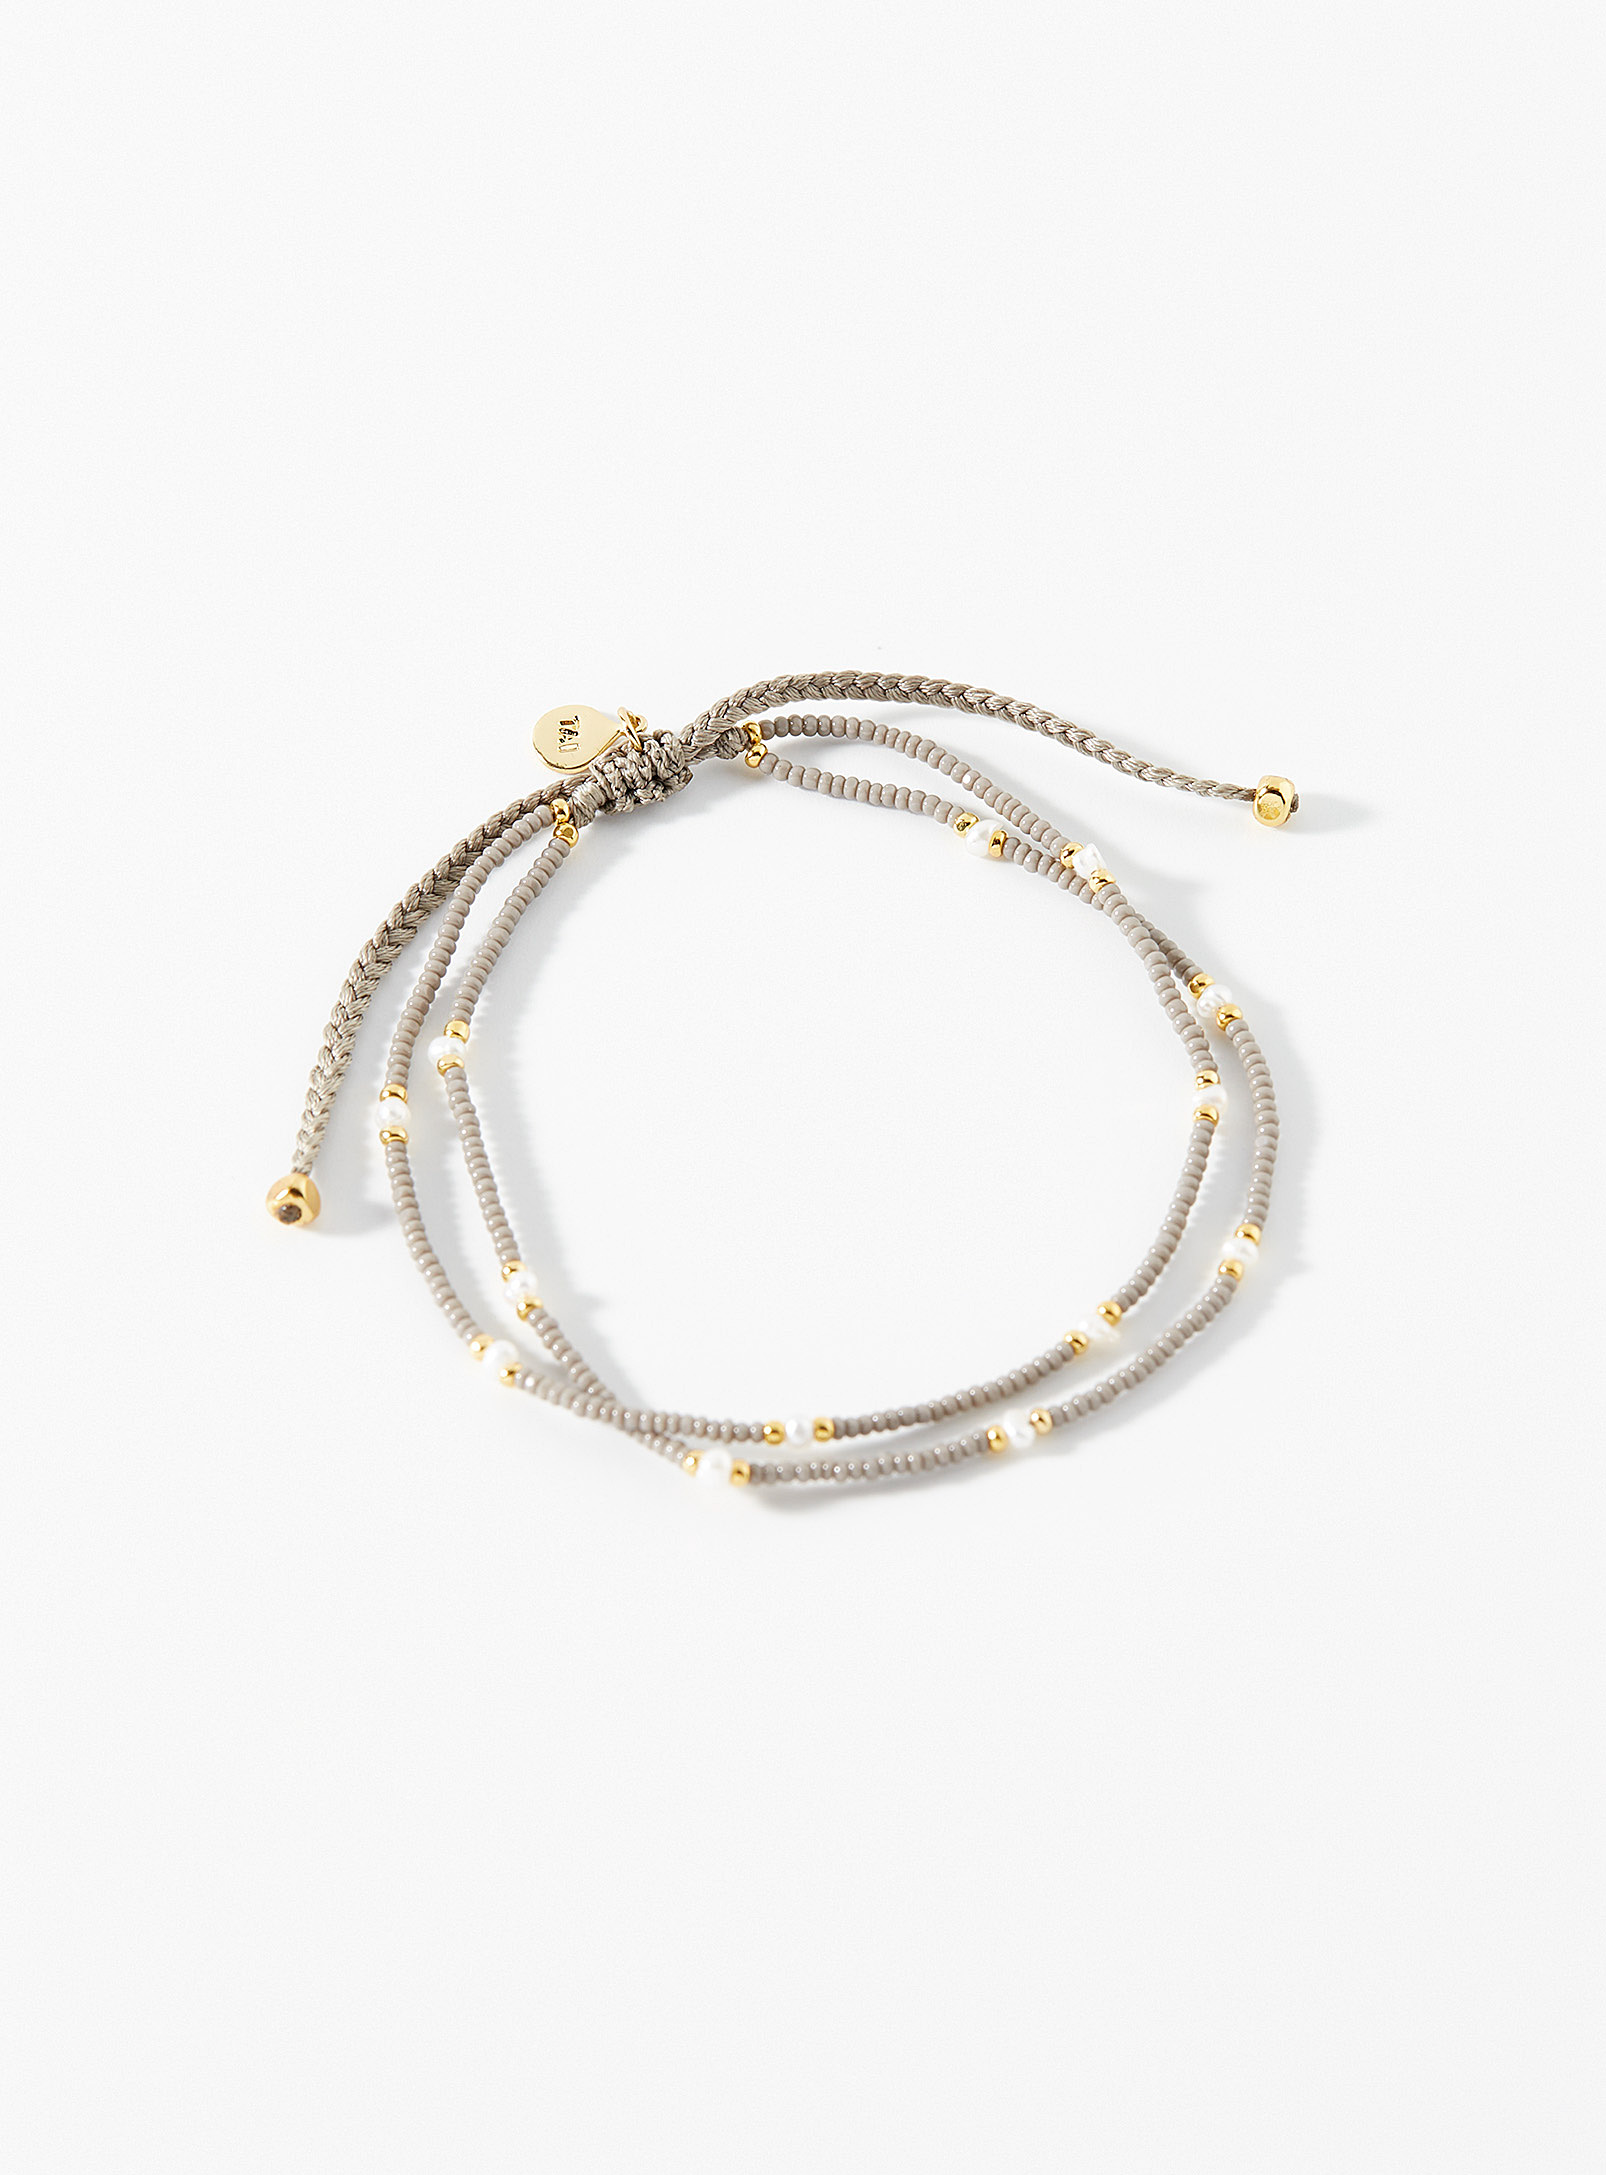 Tai - Le bracelet deux rangs billes kaki et perles nacrées